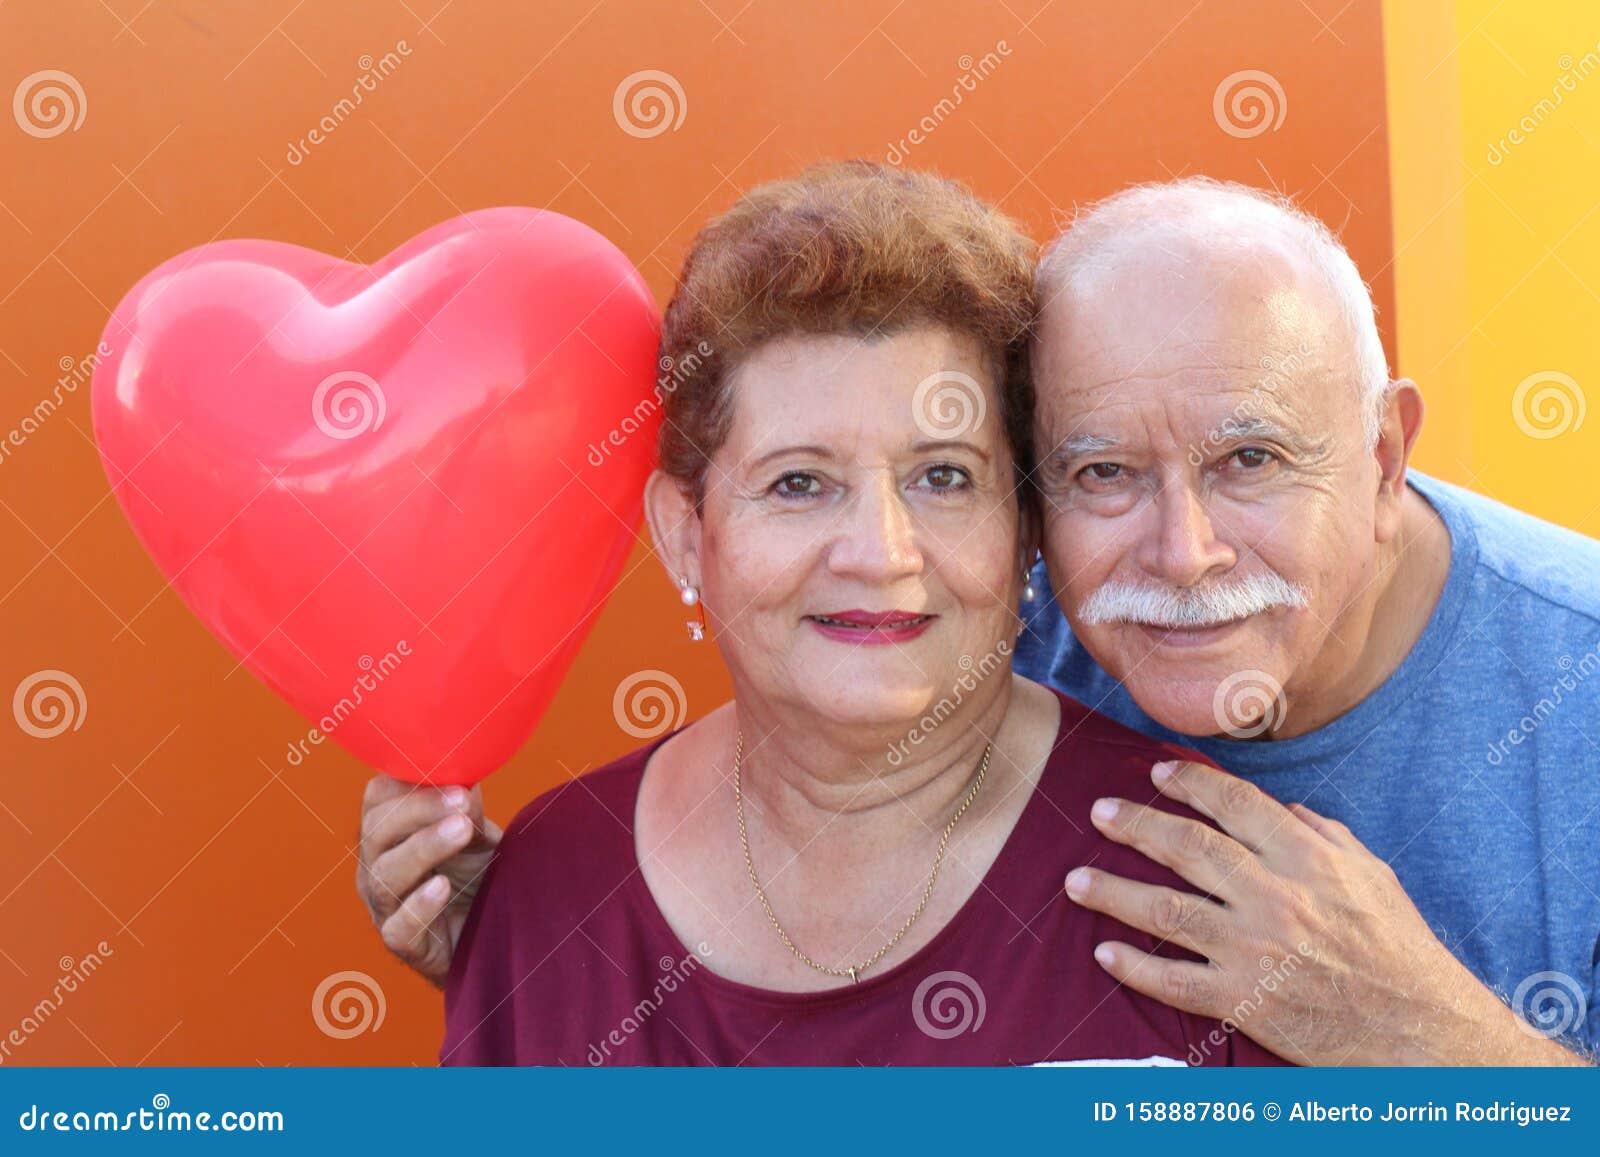 senior latino couple holding a heart balloon